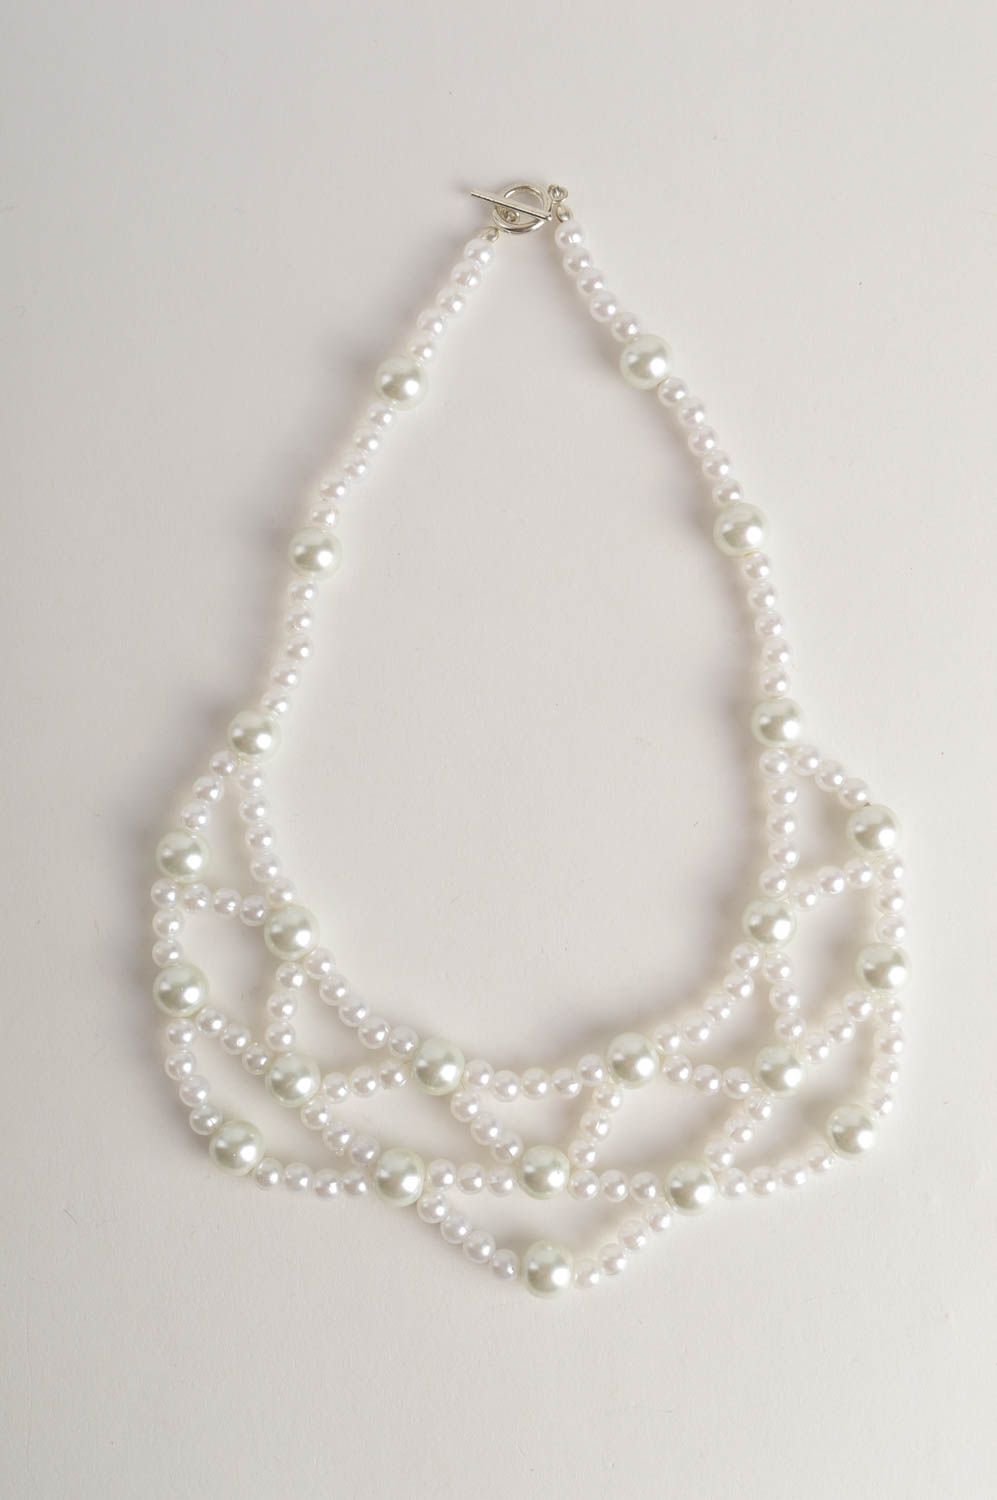 Handmade white beaded necklace elegant evening necklace female jewelry photo 2